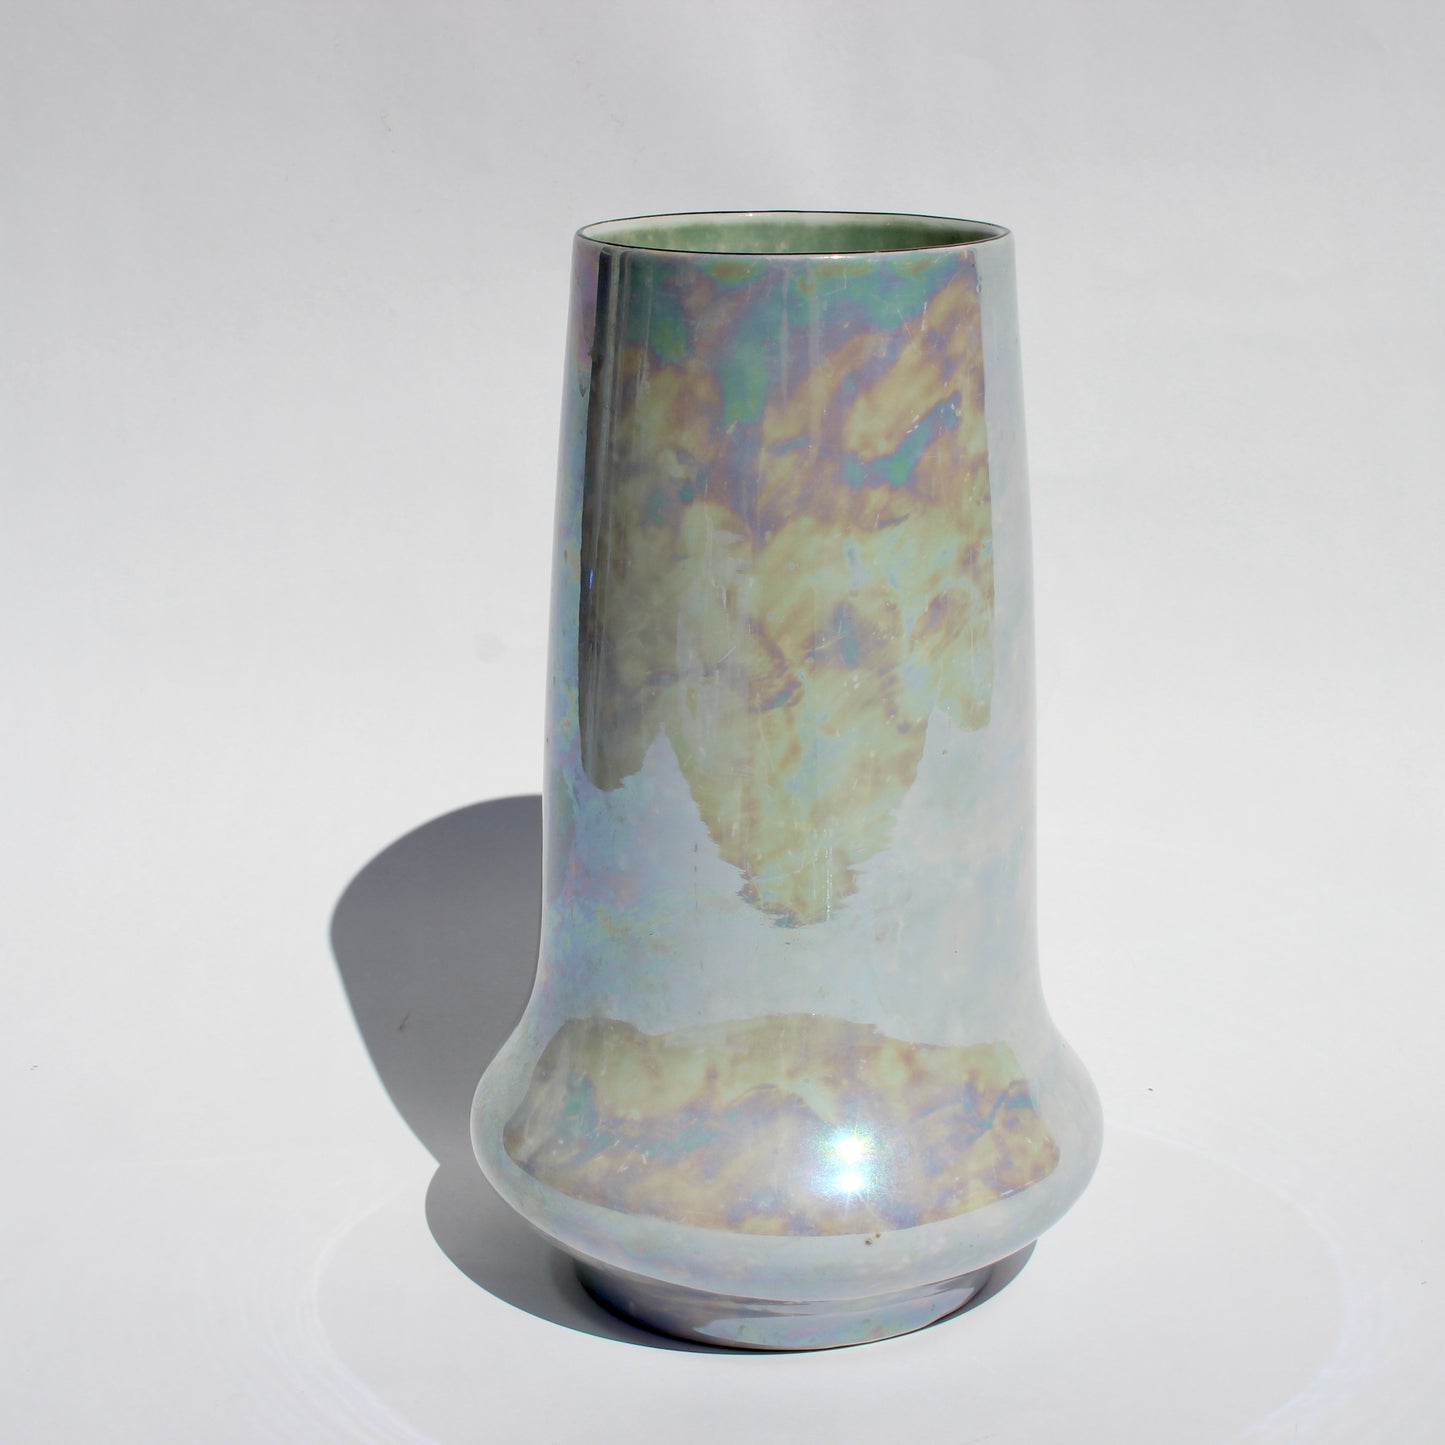 iridescent ceramic vase